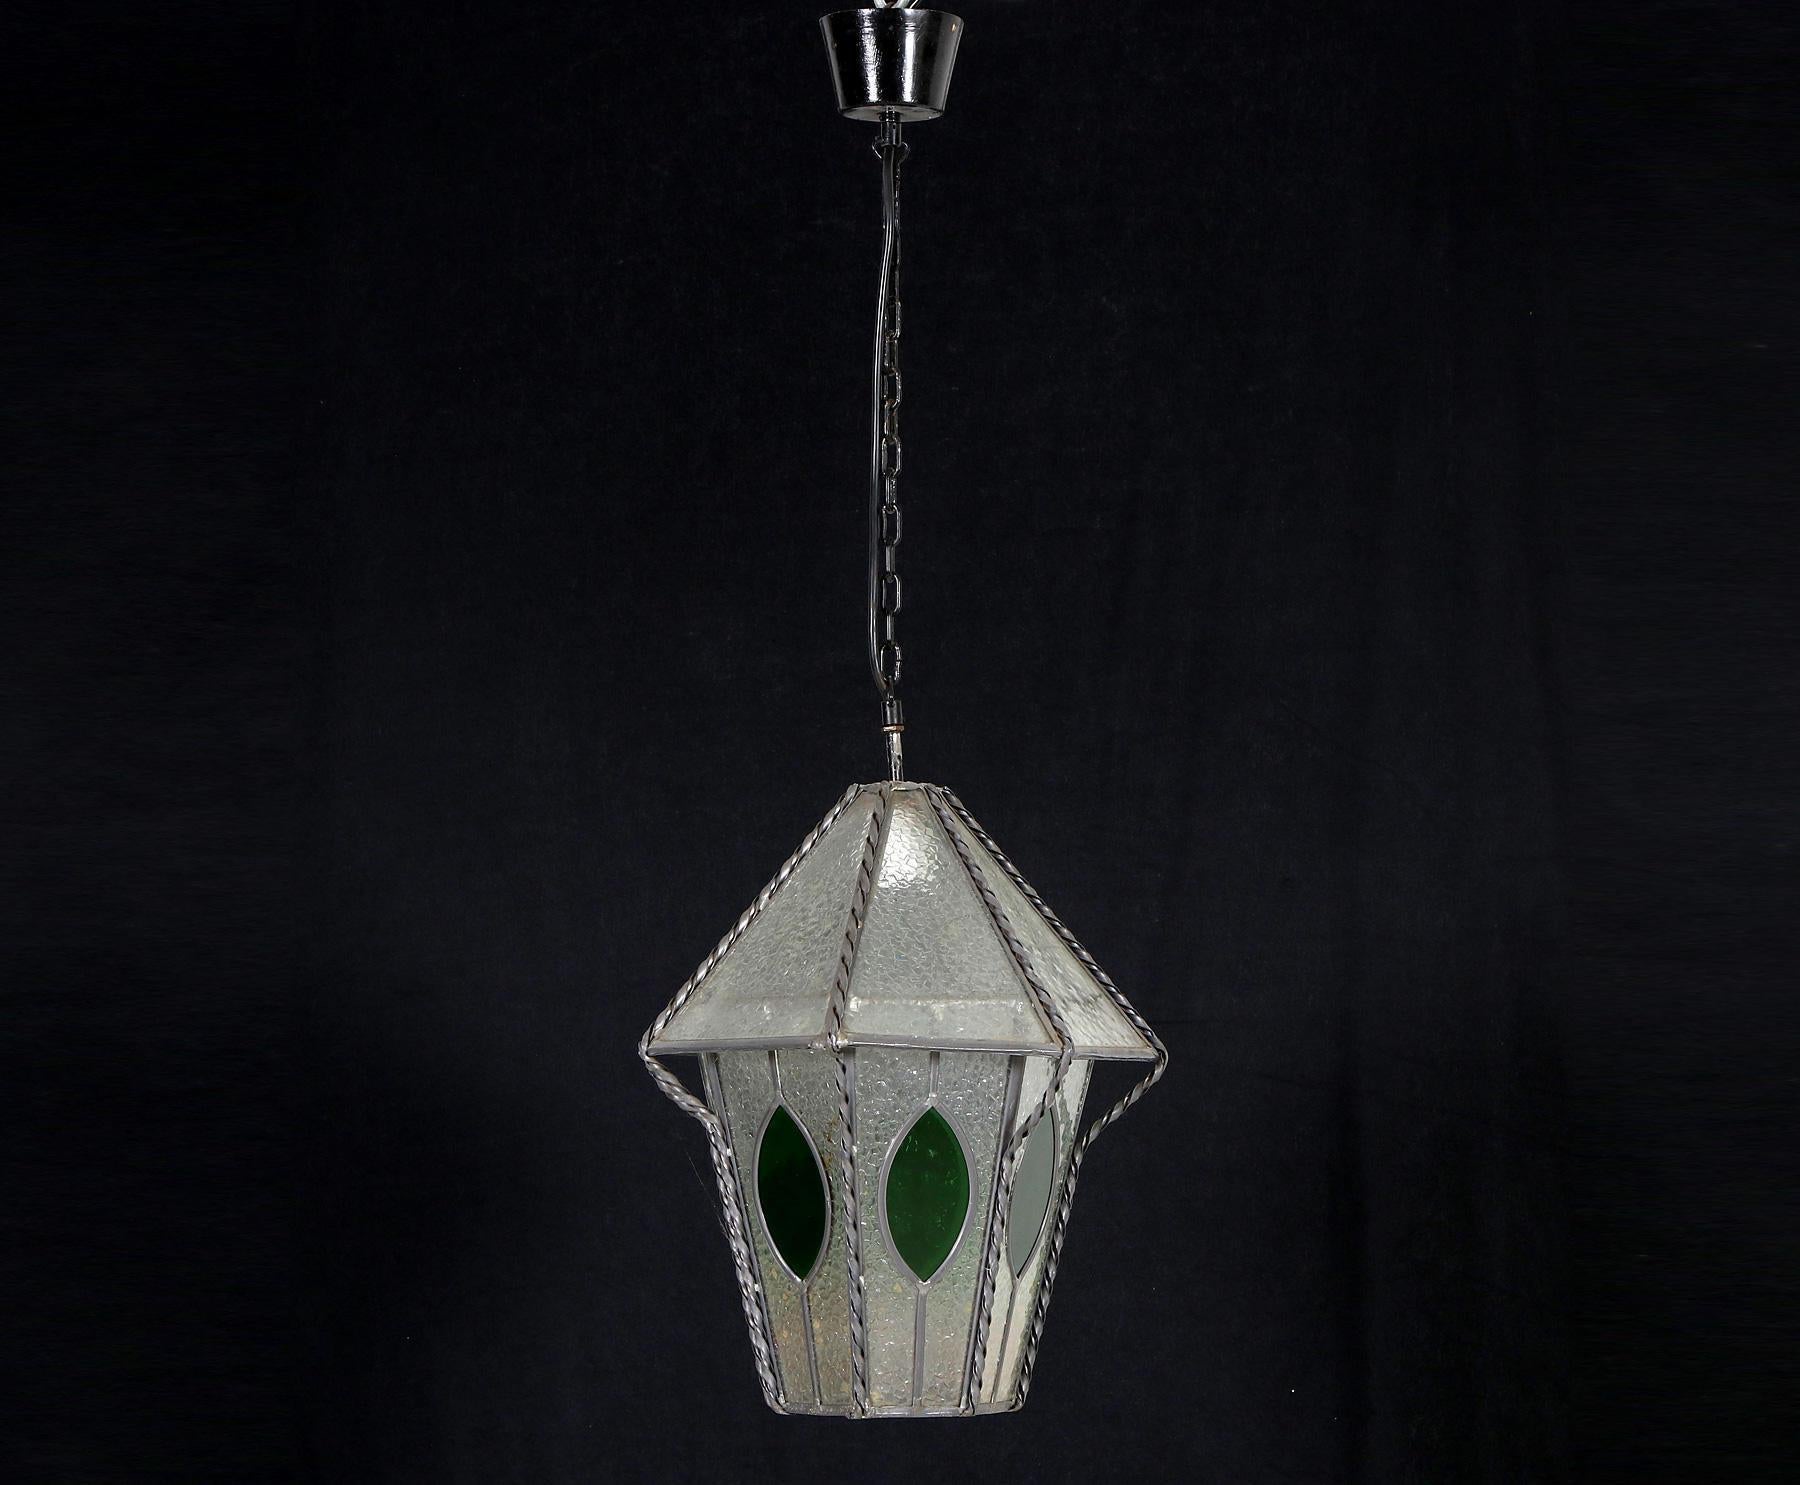 Mid-20th Century German Art Nouveau Wrought Iron Entrance Lantern For Sale